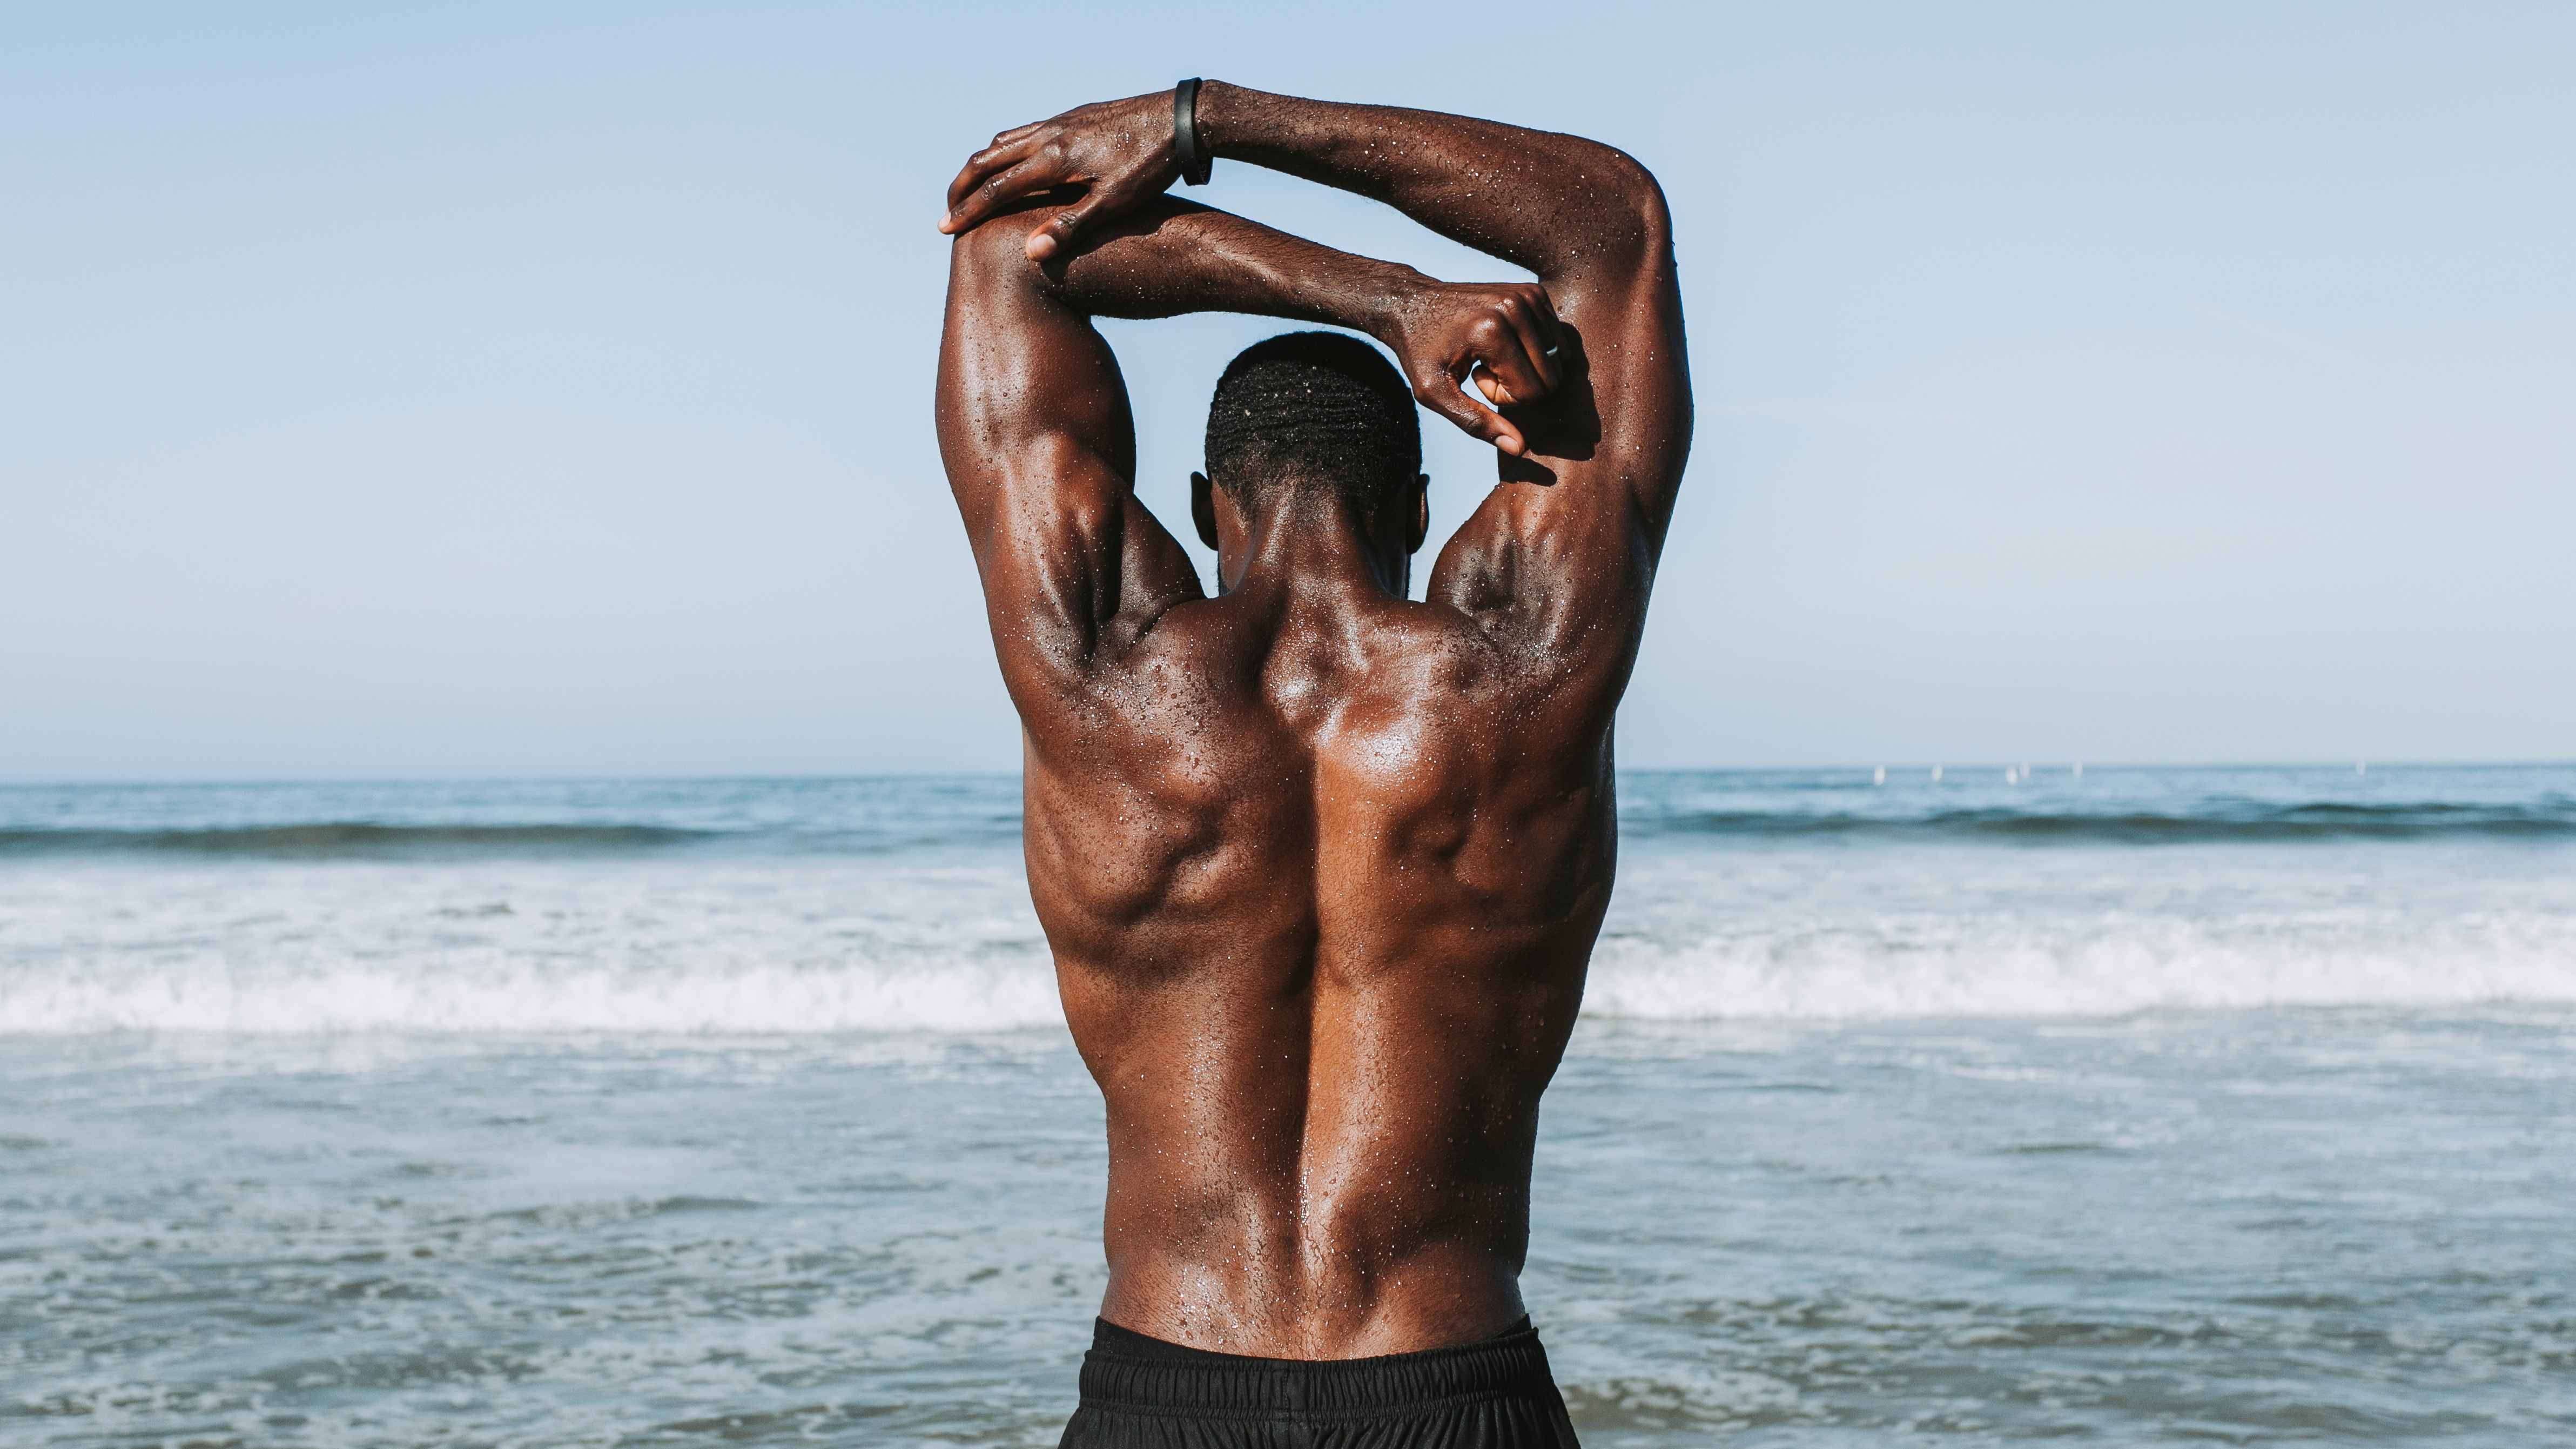 фото мужчины с сильными мышцами спины